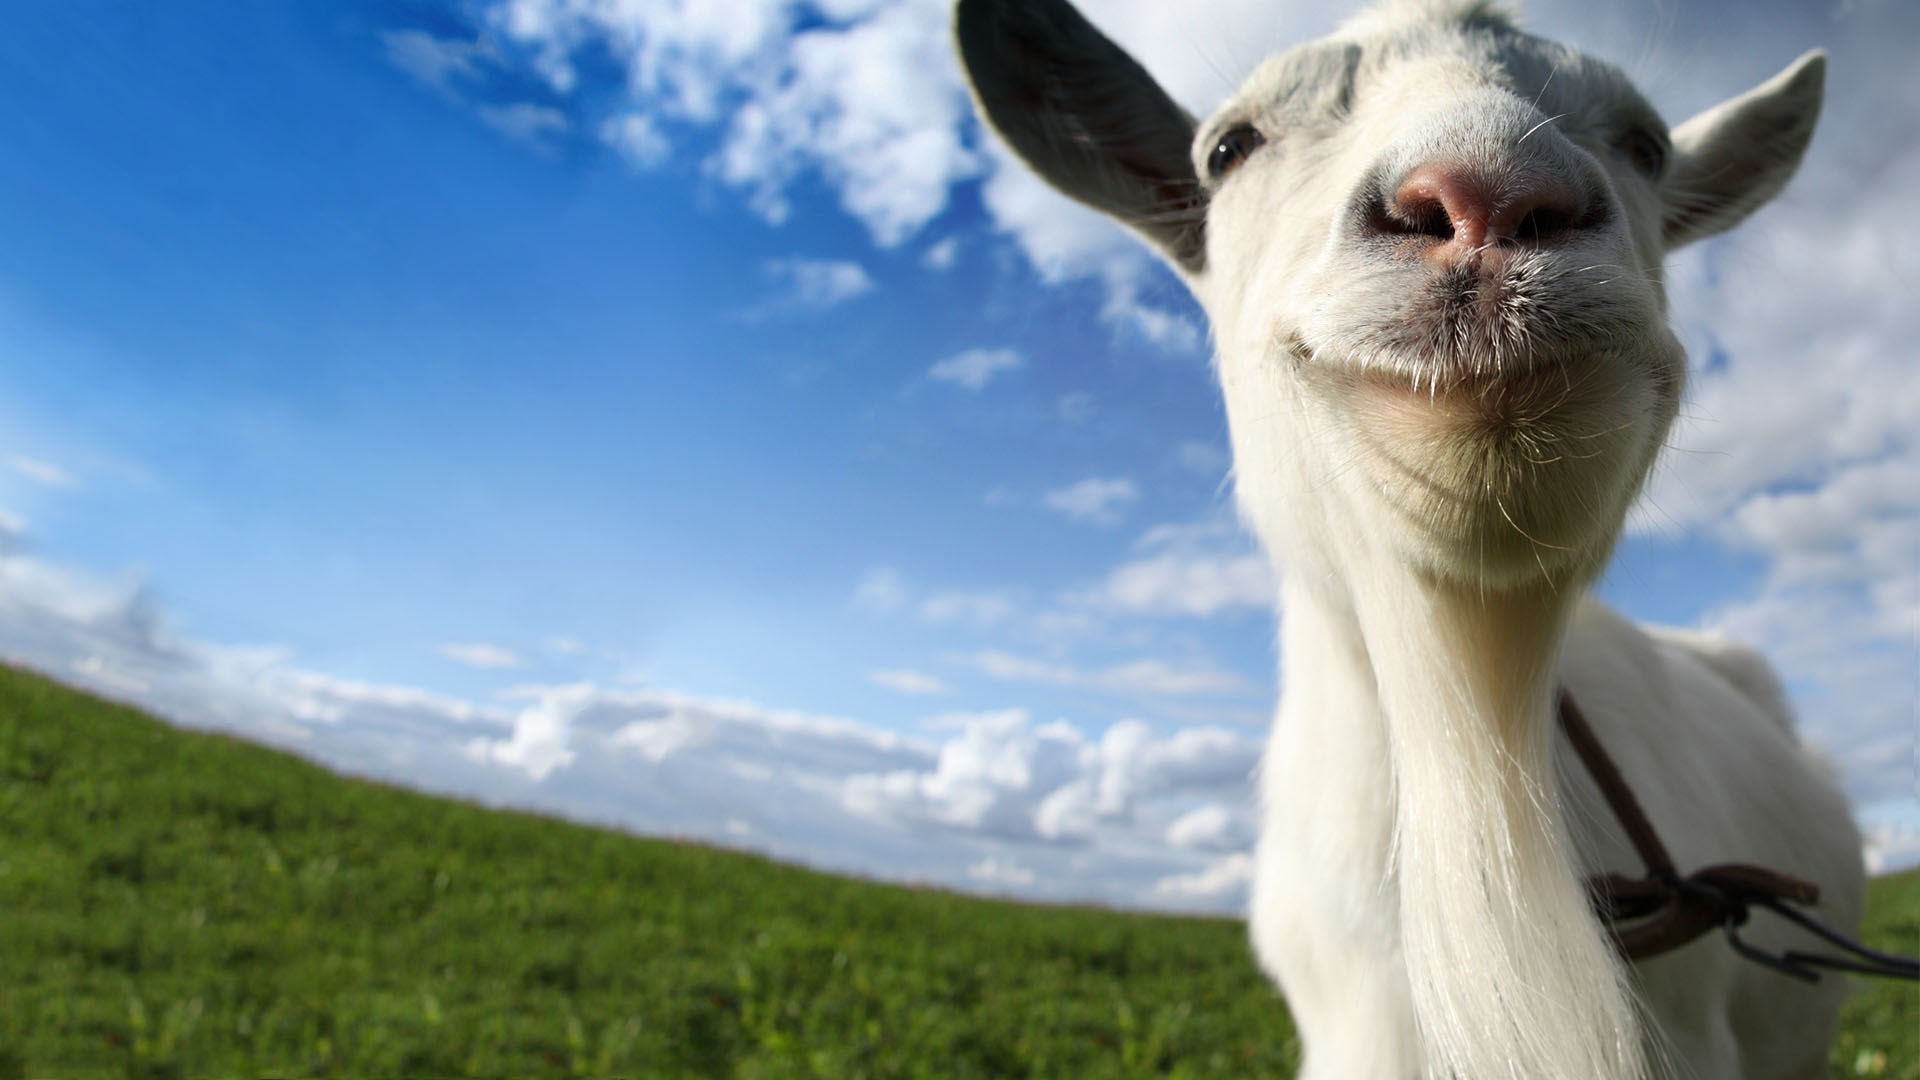 Buy Goat Simulator Microsoft Store En Gb - goat simulator in roblox